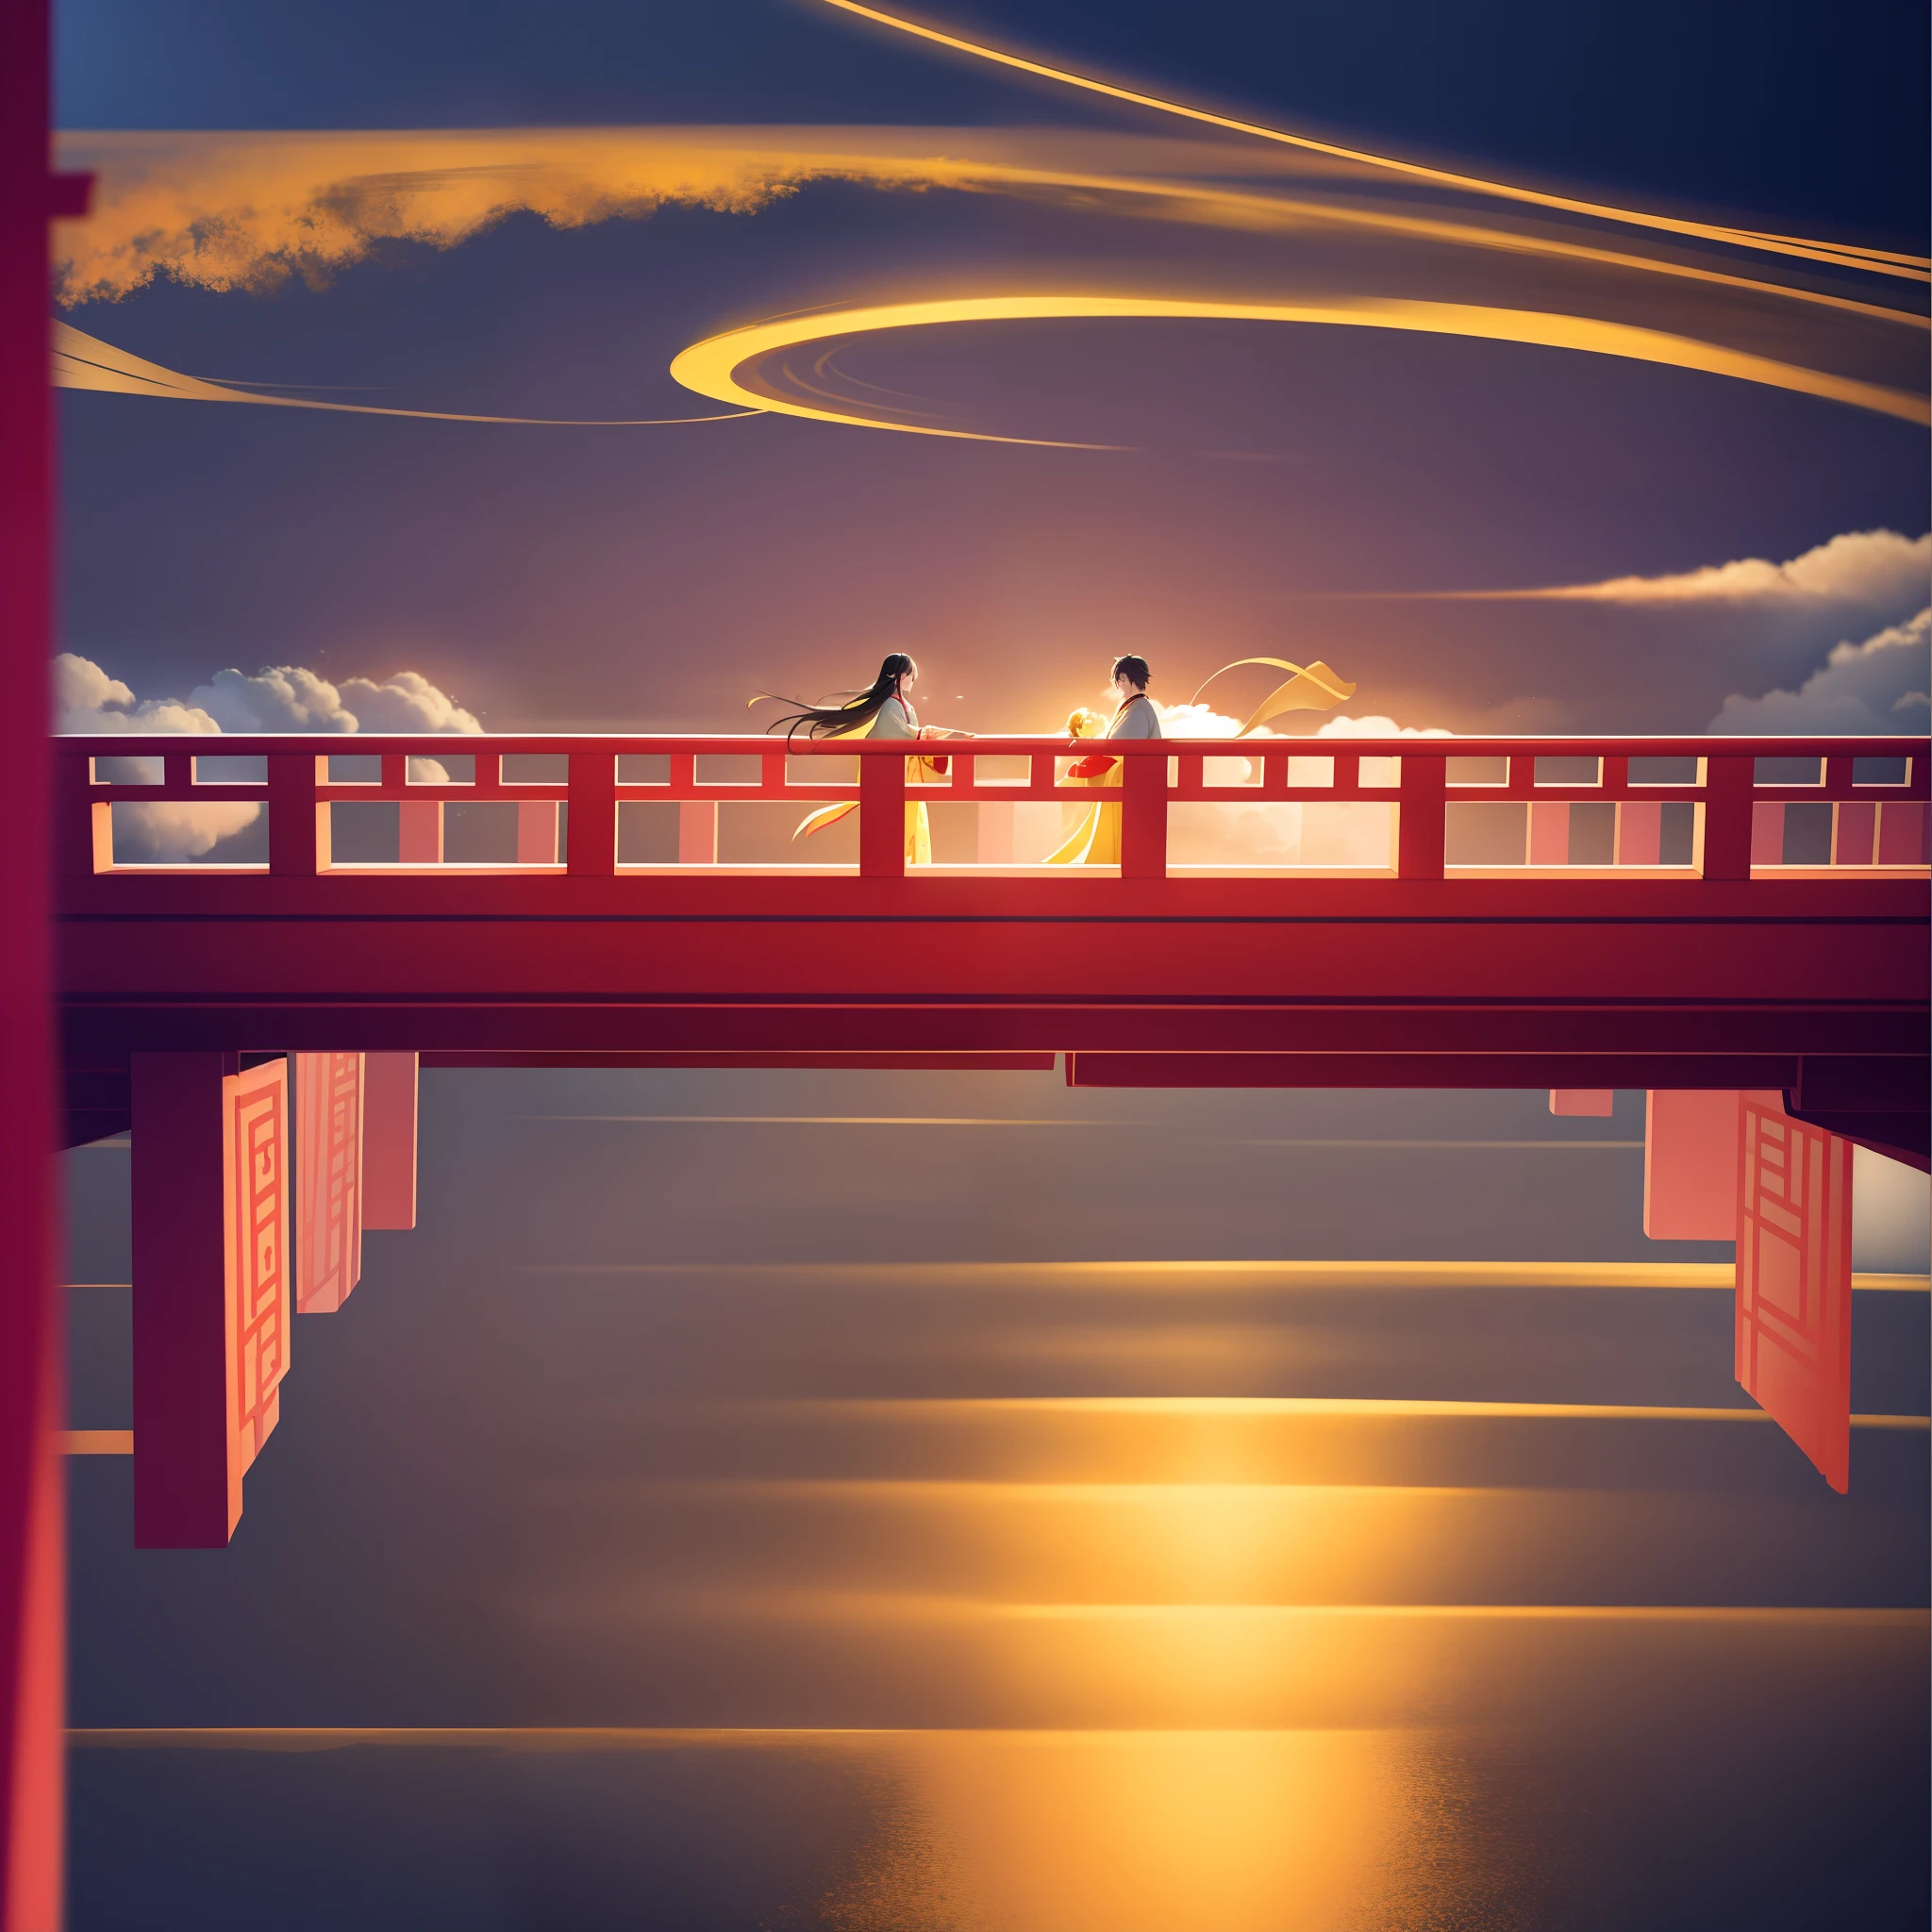 Mit roten und gelben Motiven，Eine hölzerne Bogenbrücke schwebt im Himmel，Ein Mann und eine Frau treffen sich auf der Brücke，Das Tragen eines alten chinesischen Hanfu，Die Brücke ist von glückverheißenden Wolken umgeben，Großer goldener Mond，4K，Chinesischer Malstil，filmisches Licht，Vorderansicht，starker Kontrast，Glückverheißende Wolken bedecken die Brücke ein wenig